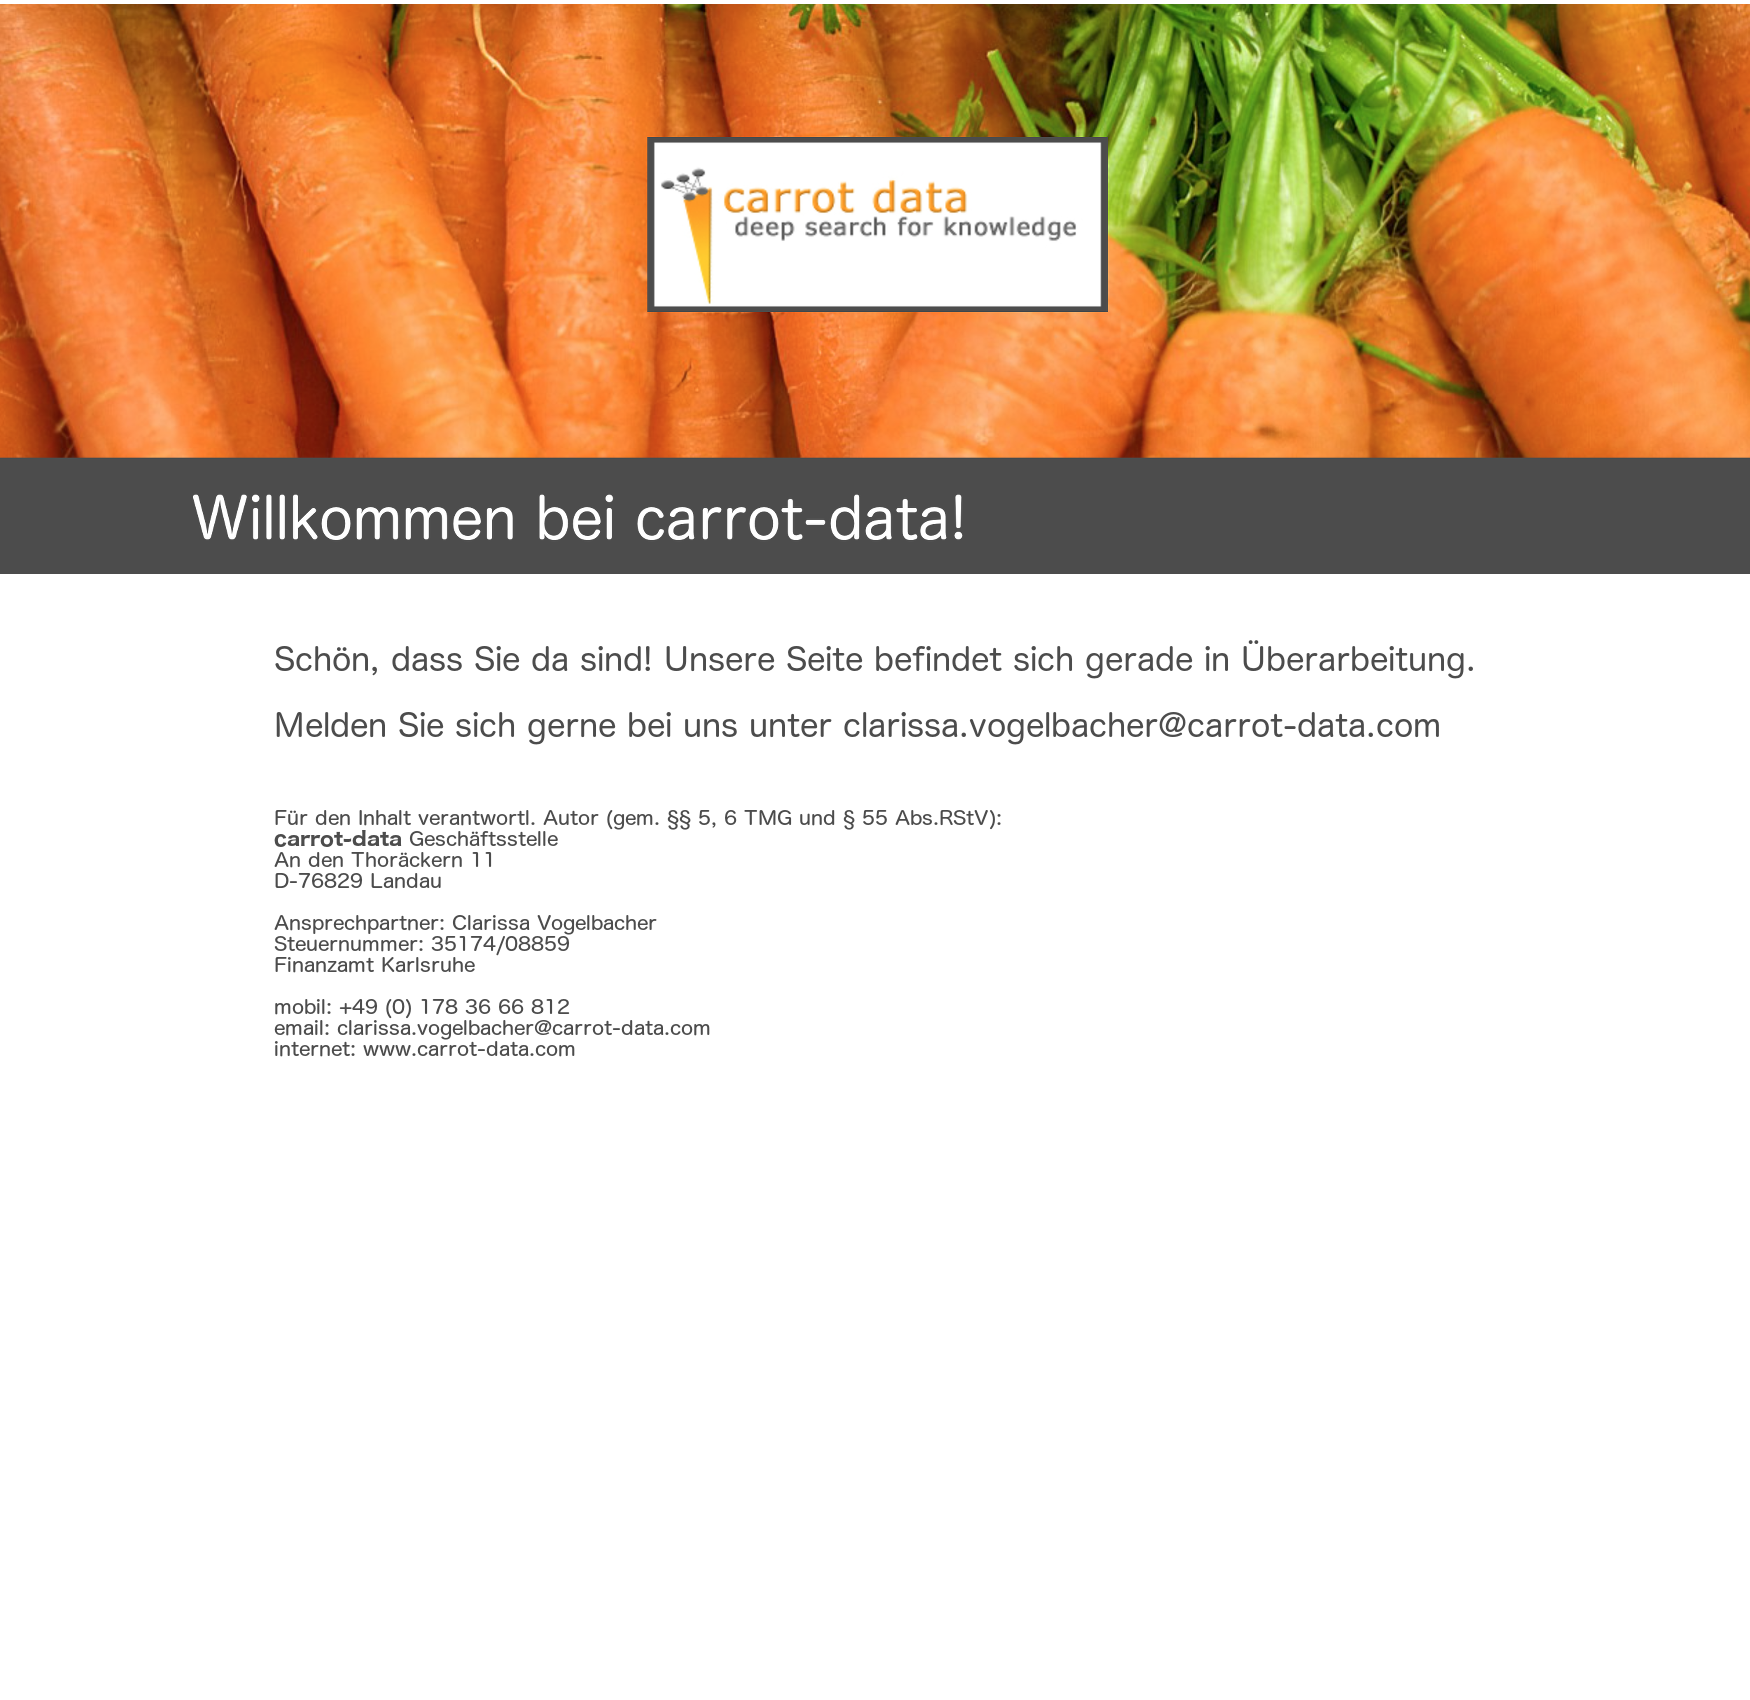 carrot-data.com